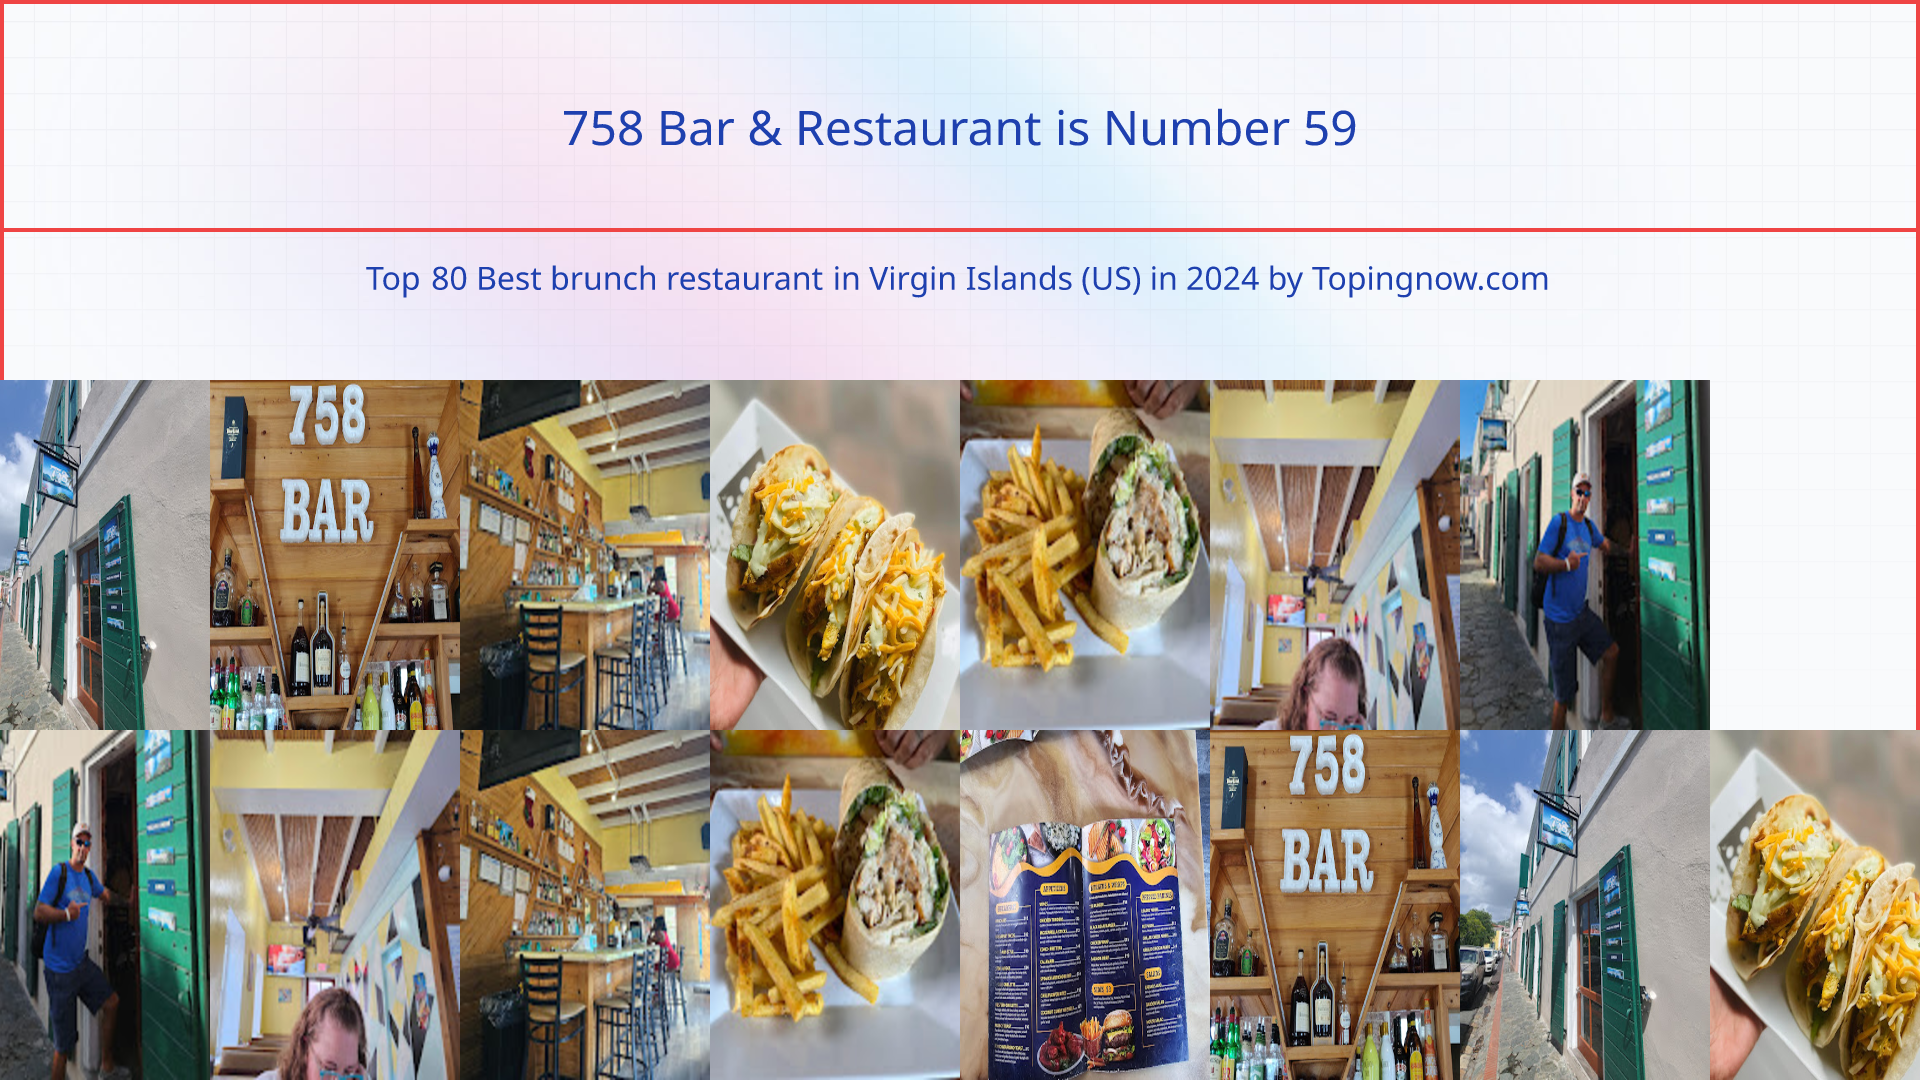 758 Bar & Restaurant: Top 80 Best brunch restaurant in Virgin Islands (US) in 2024